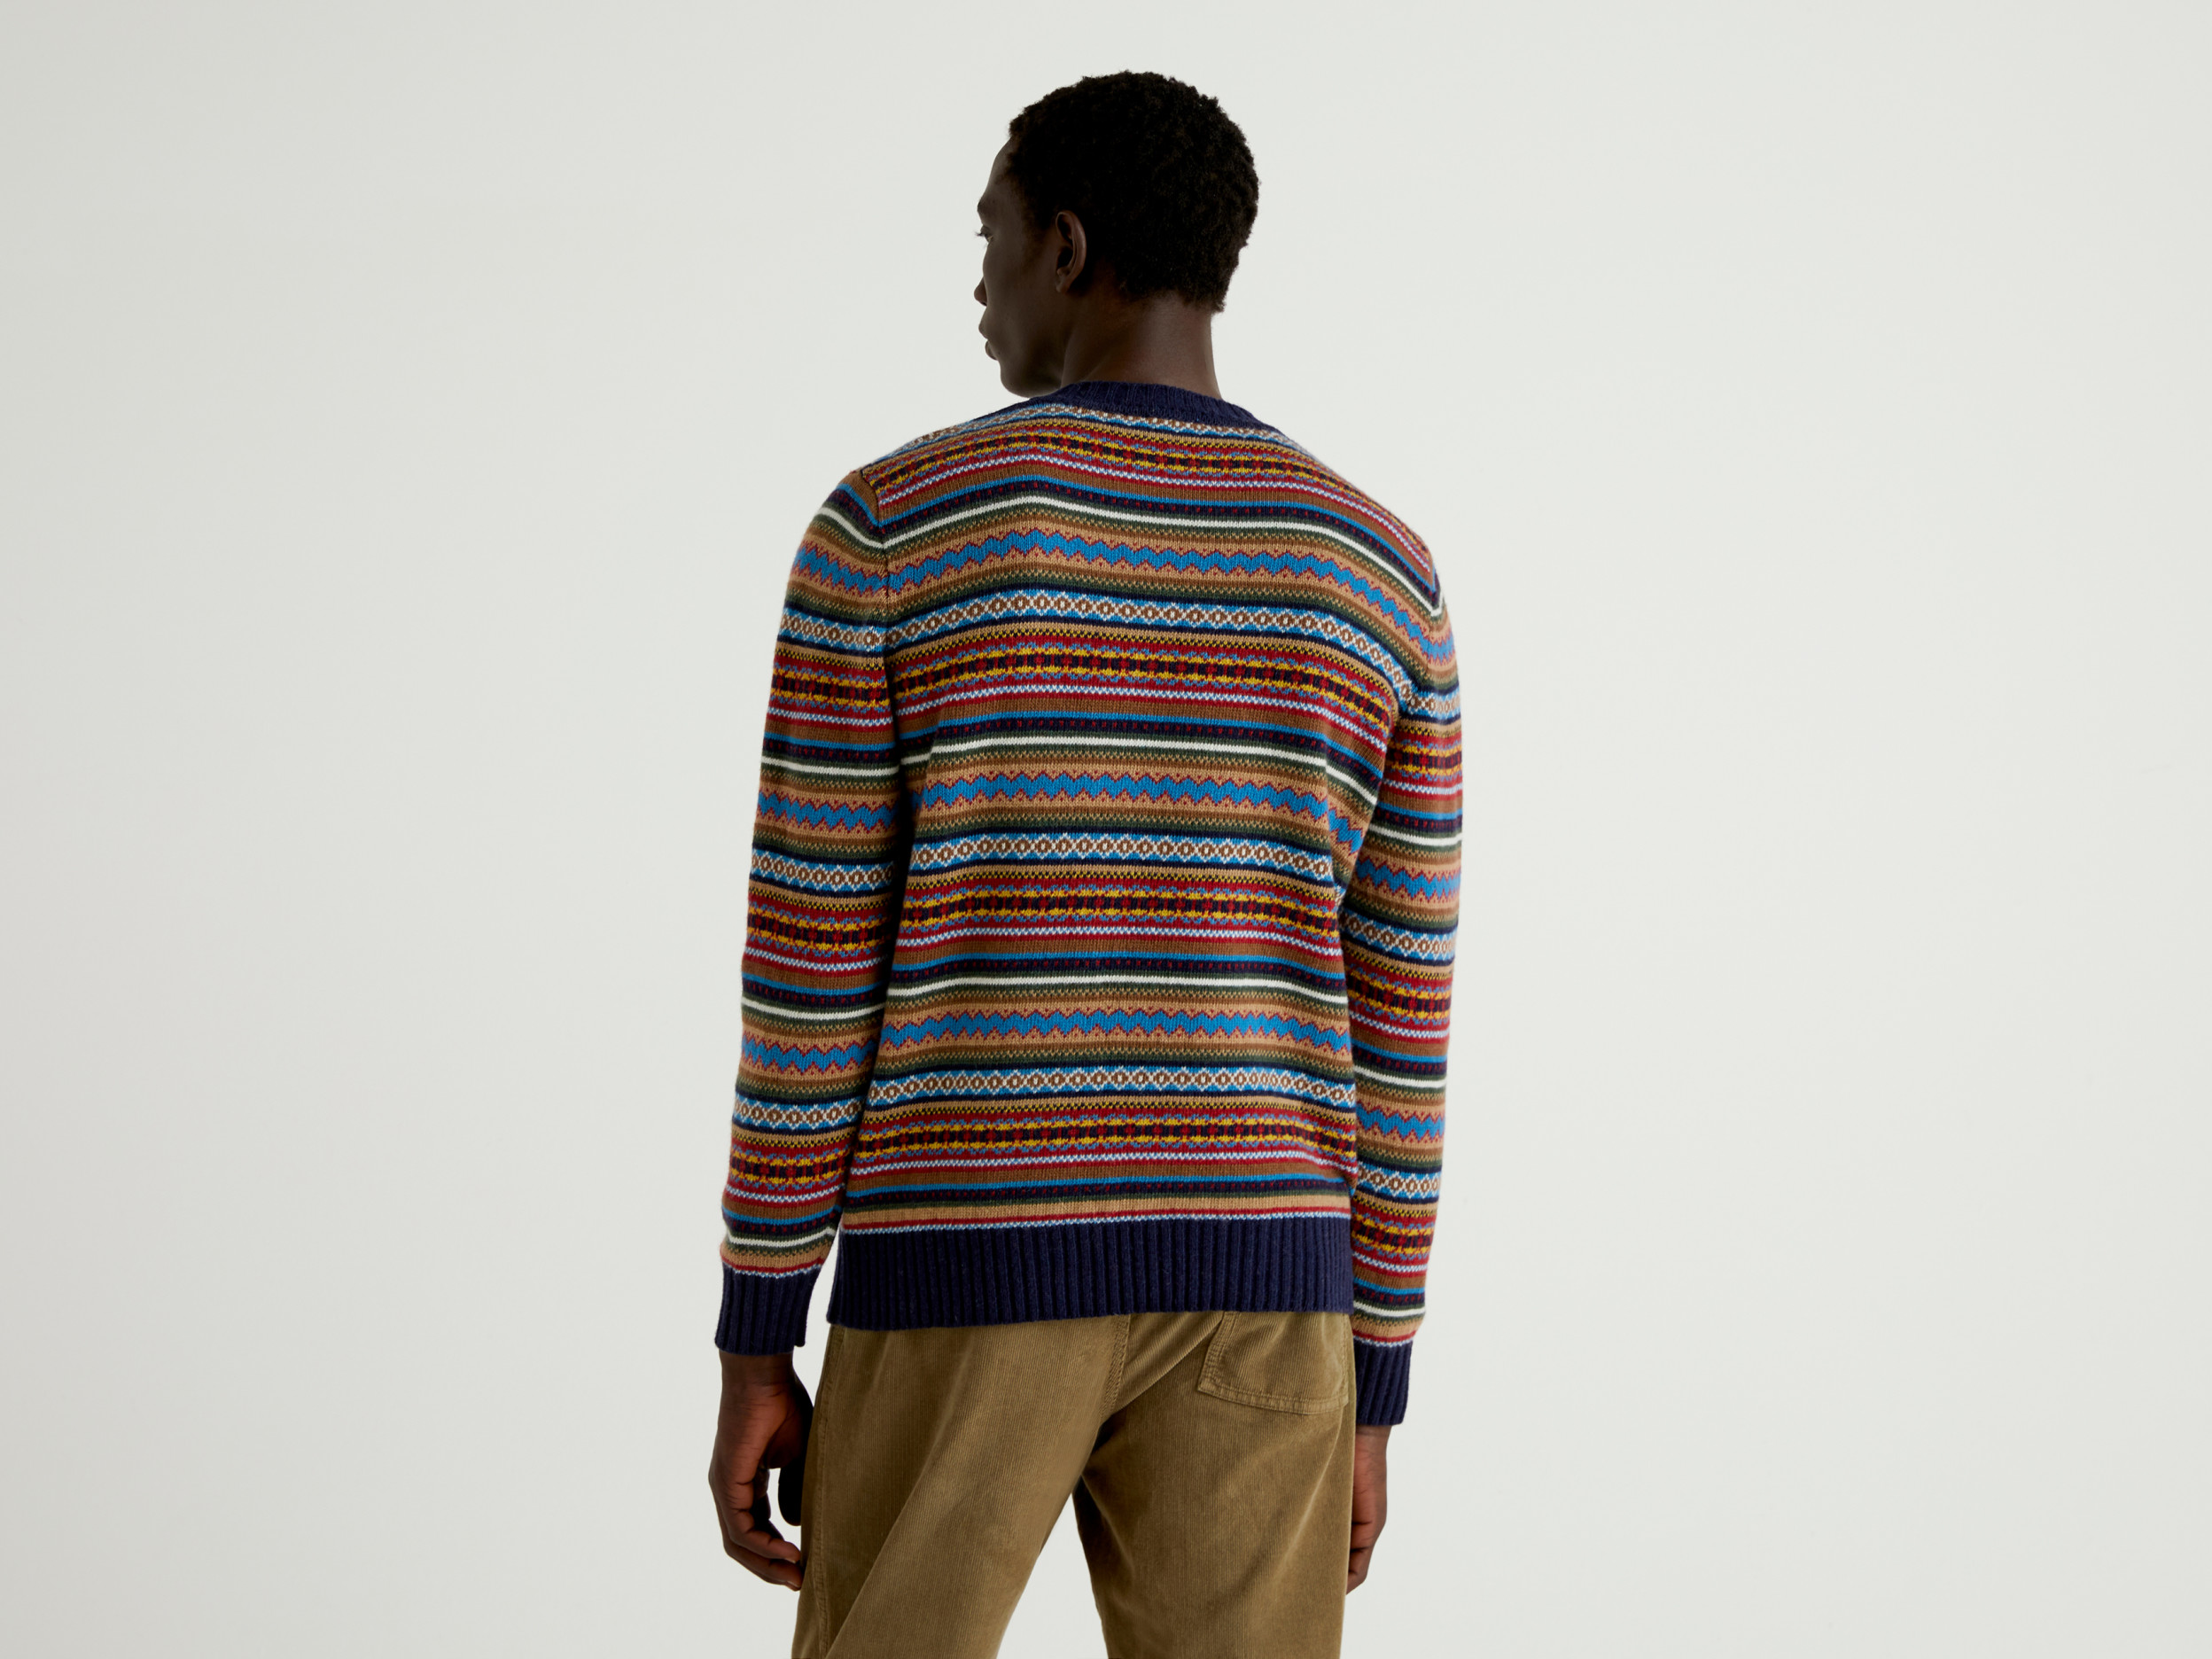 Benetton, Multicolored Jacquard Sweater, Taglia Xxl, Multi-Color, Men